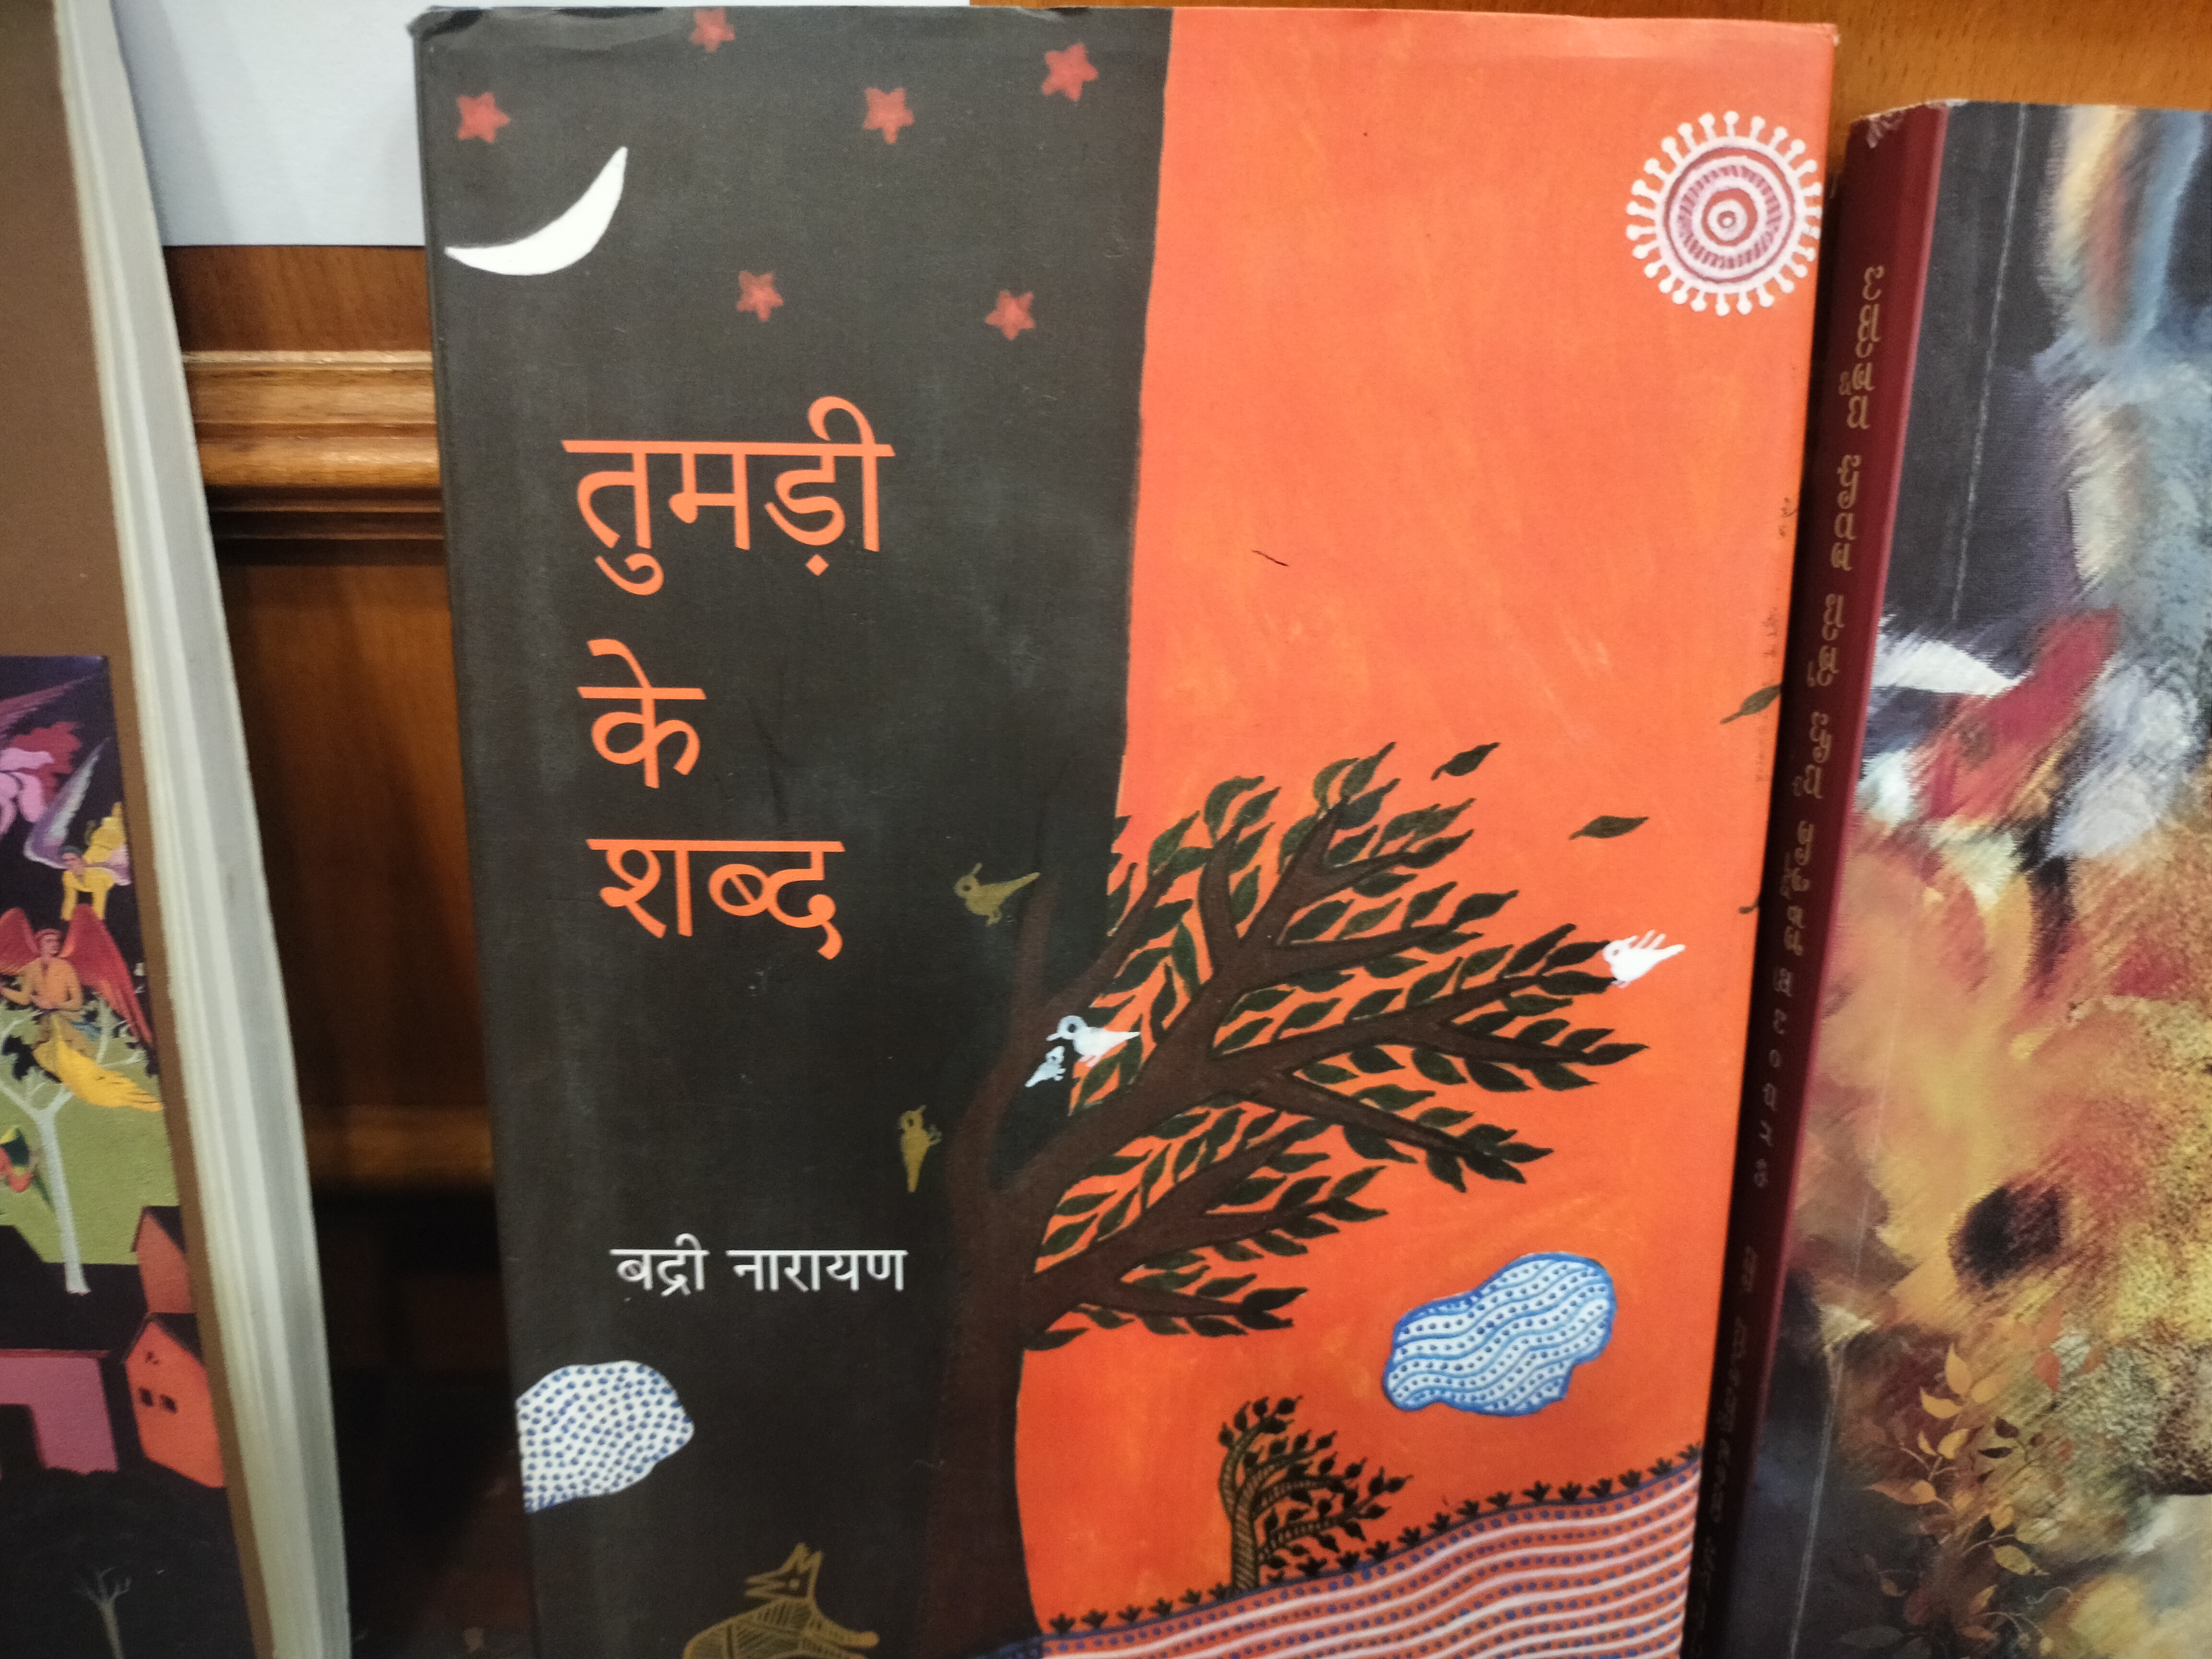 बद्री नारायण को इसी कविता के लिए मिला अवार्ड.